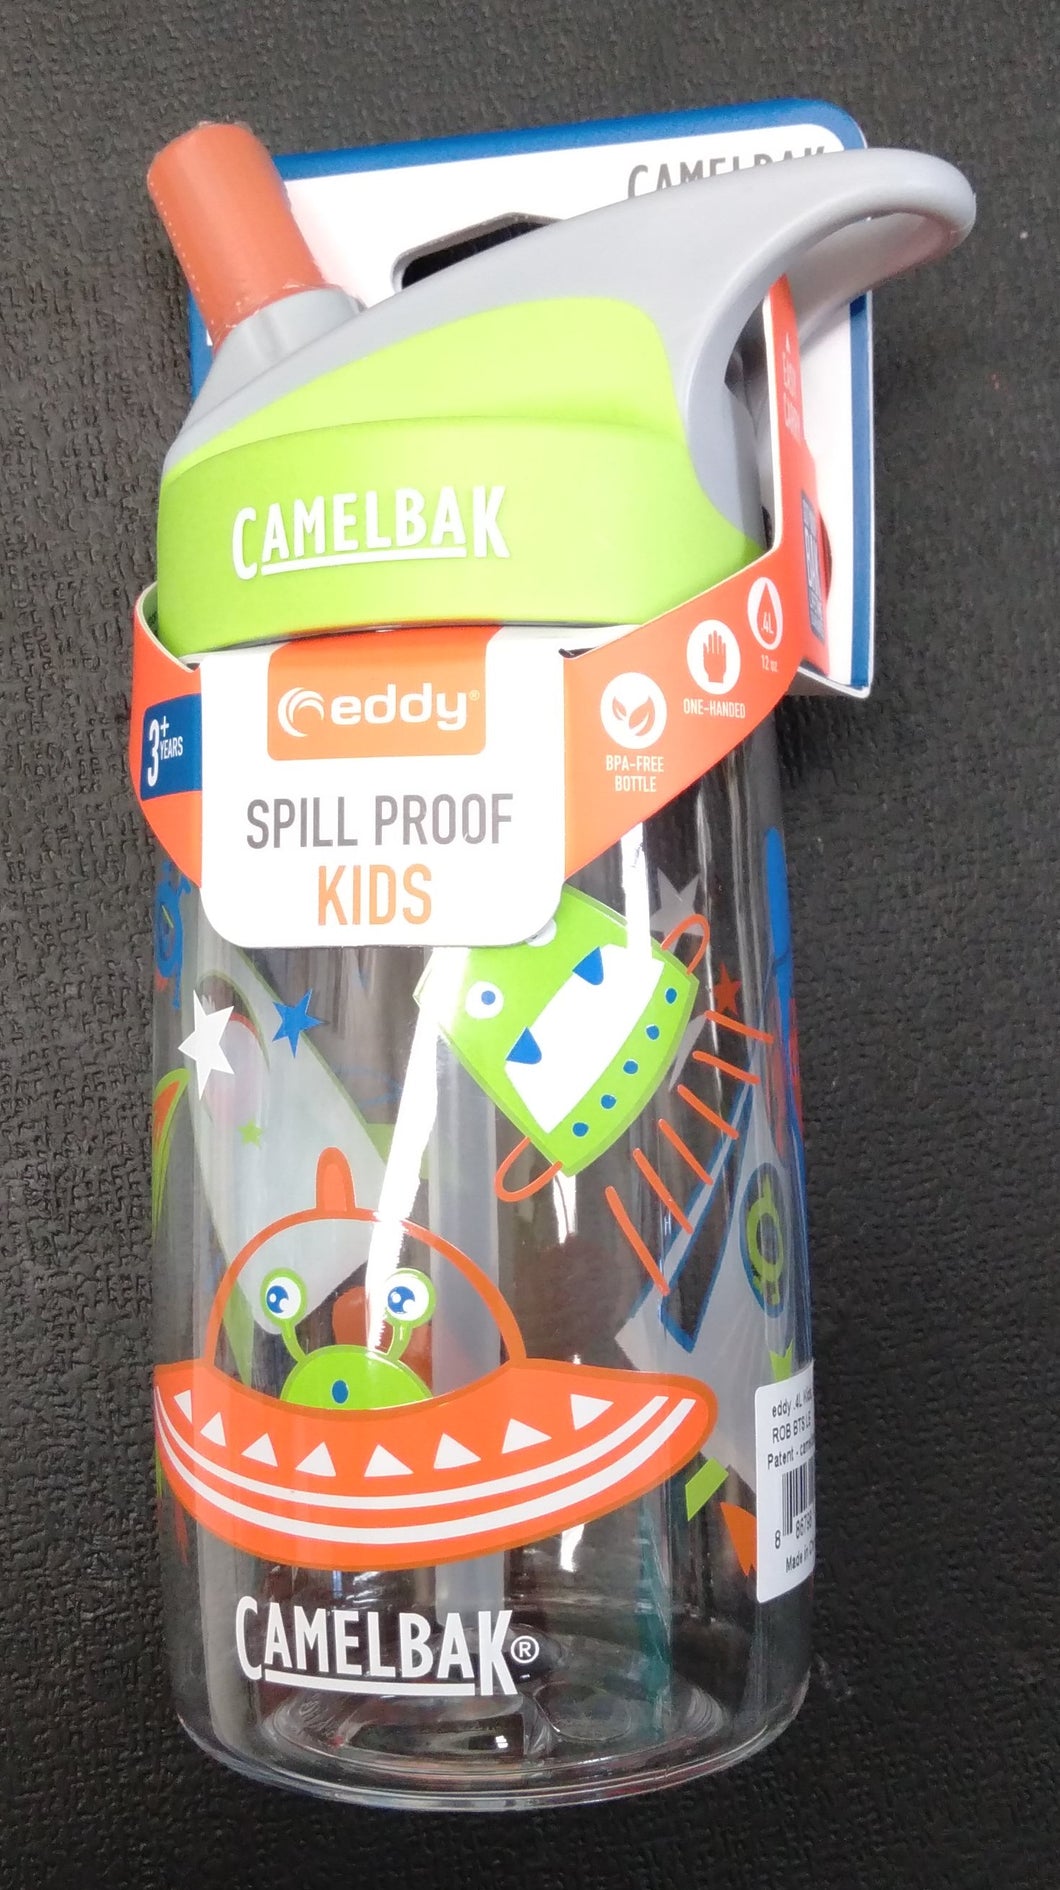 Camelbak Eddy Spill Proof Kids